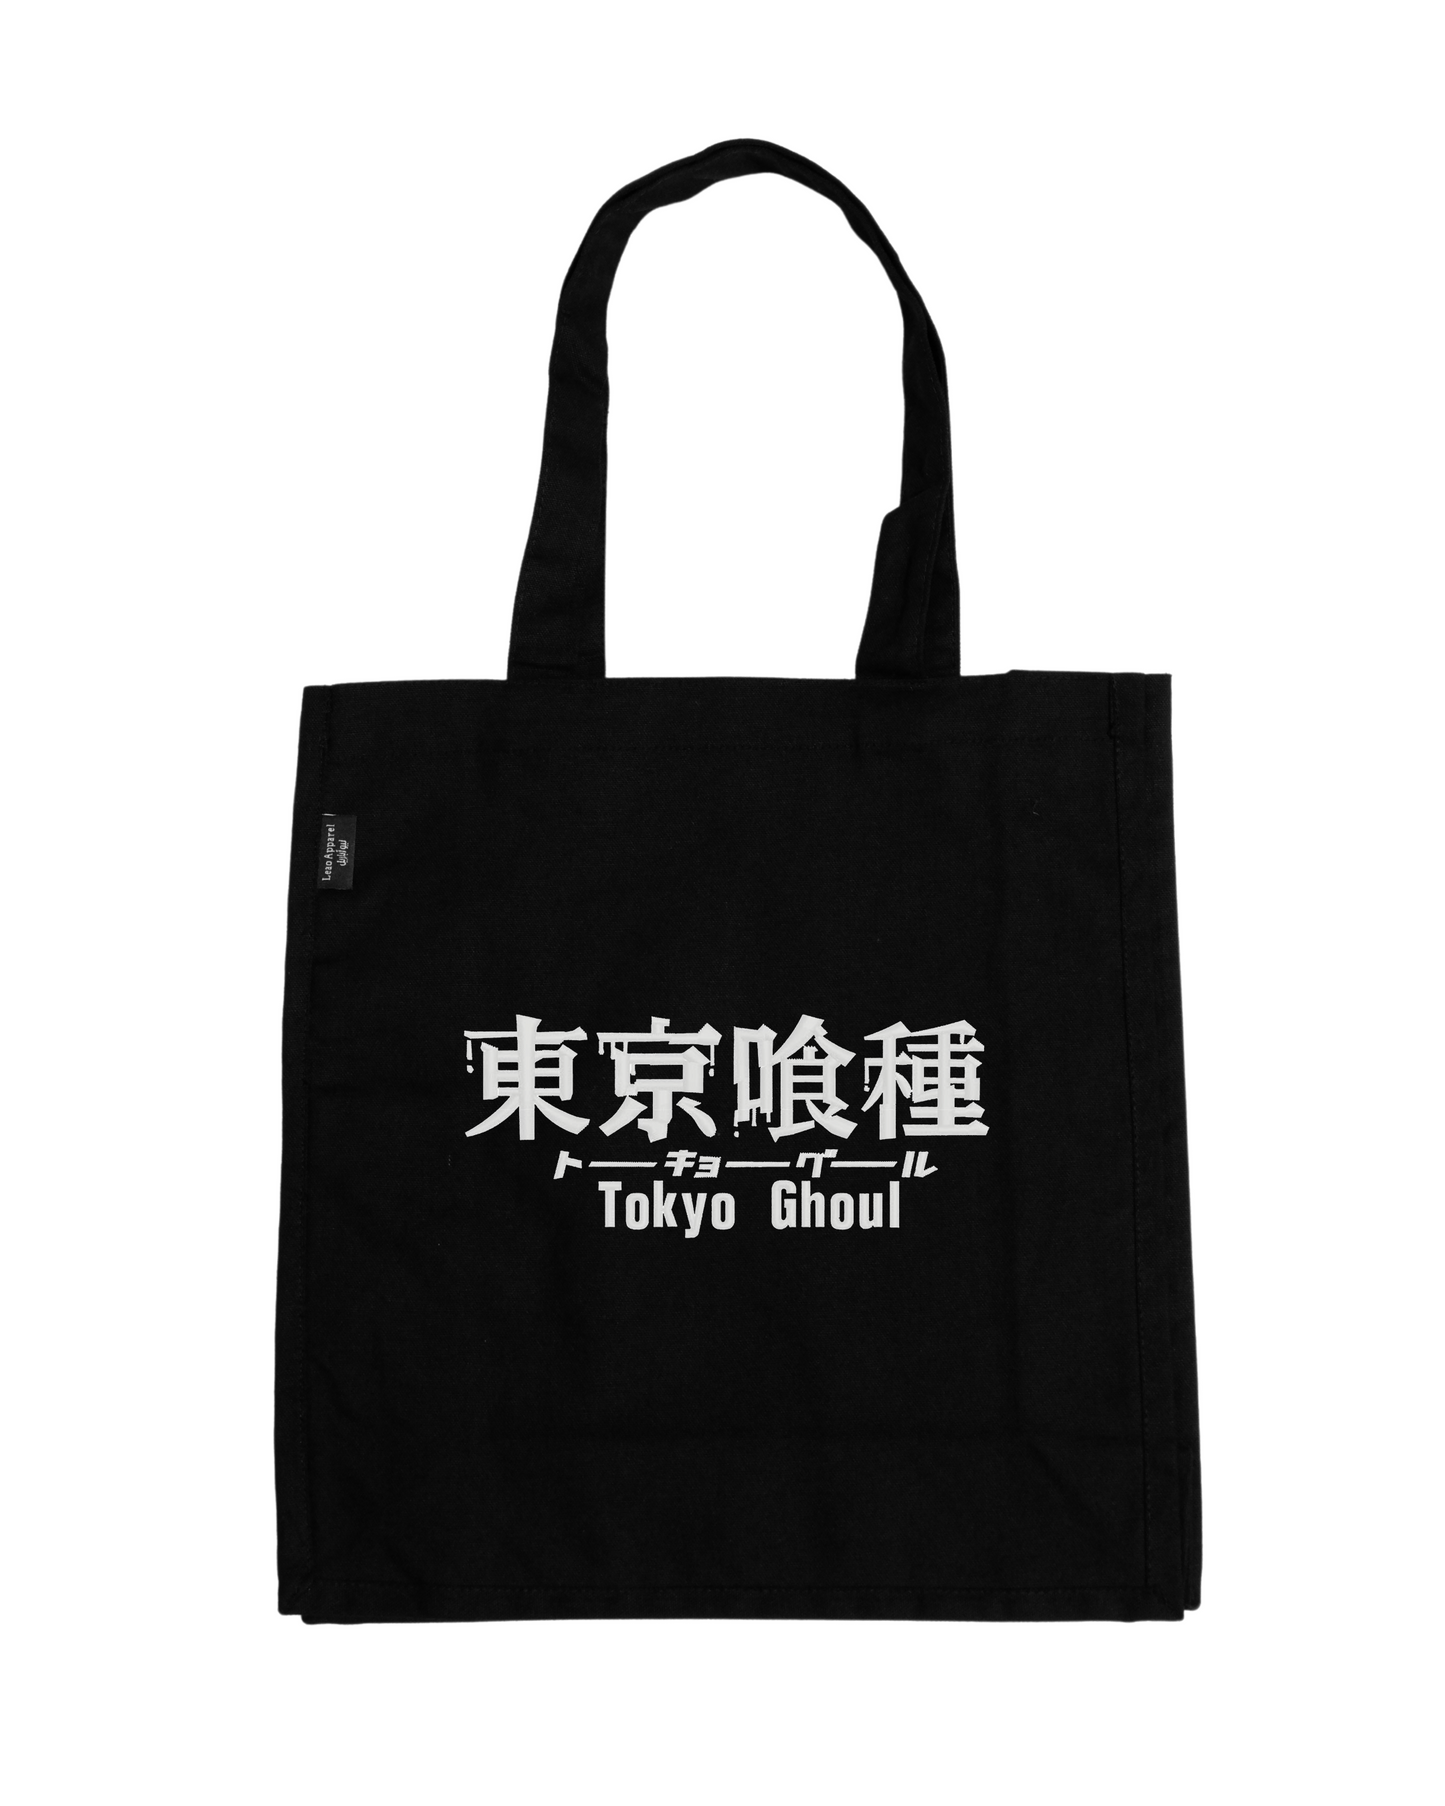 Tokyo Ghoul Tote Bag